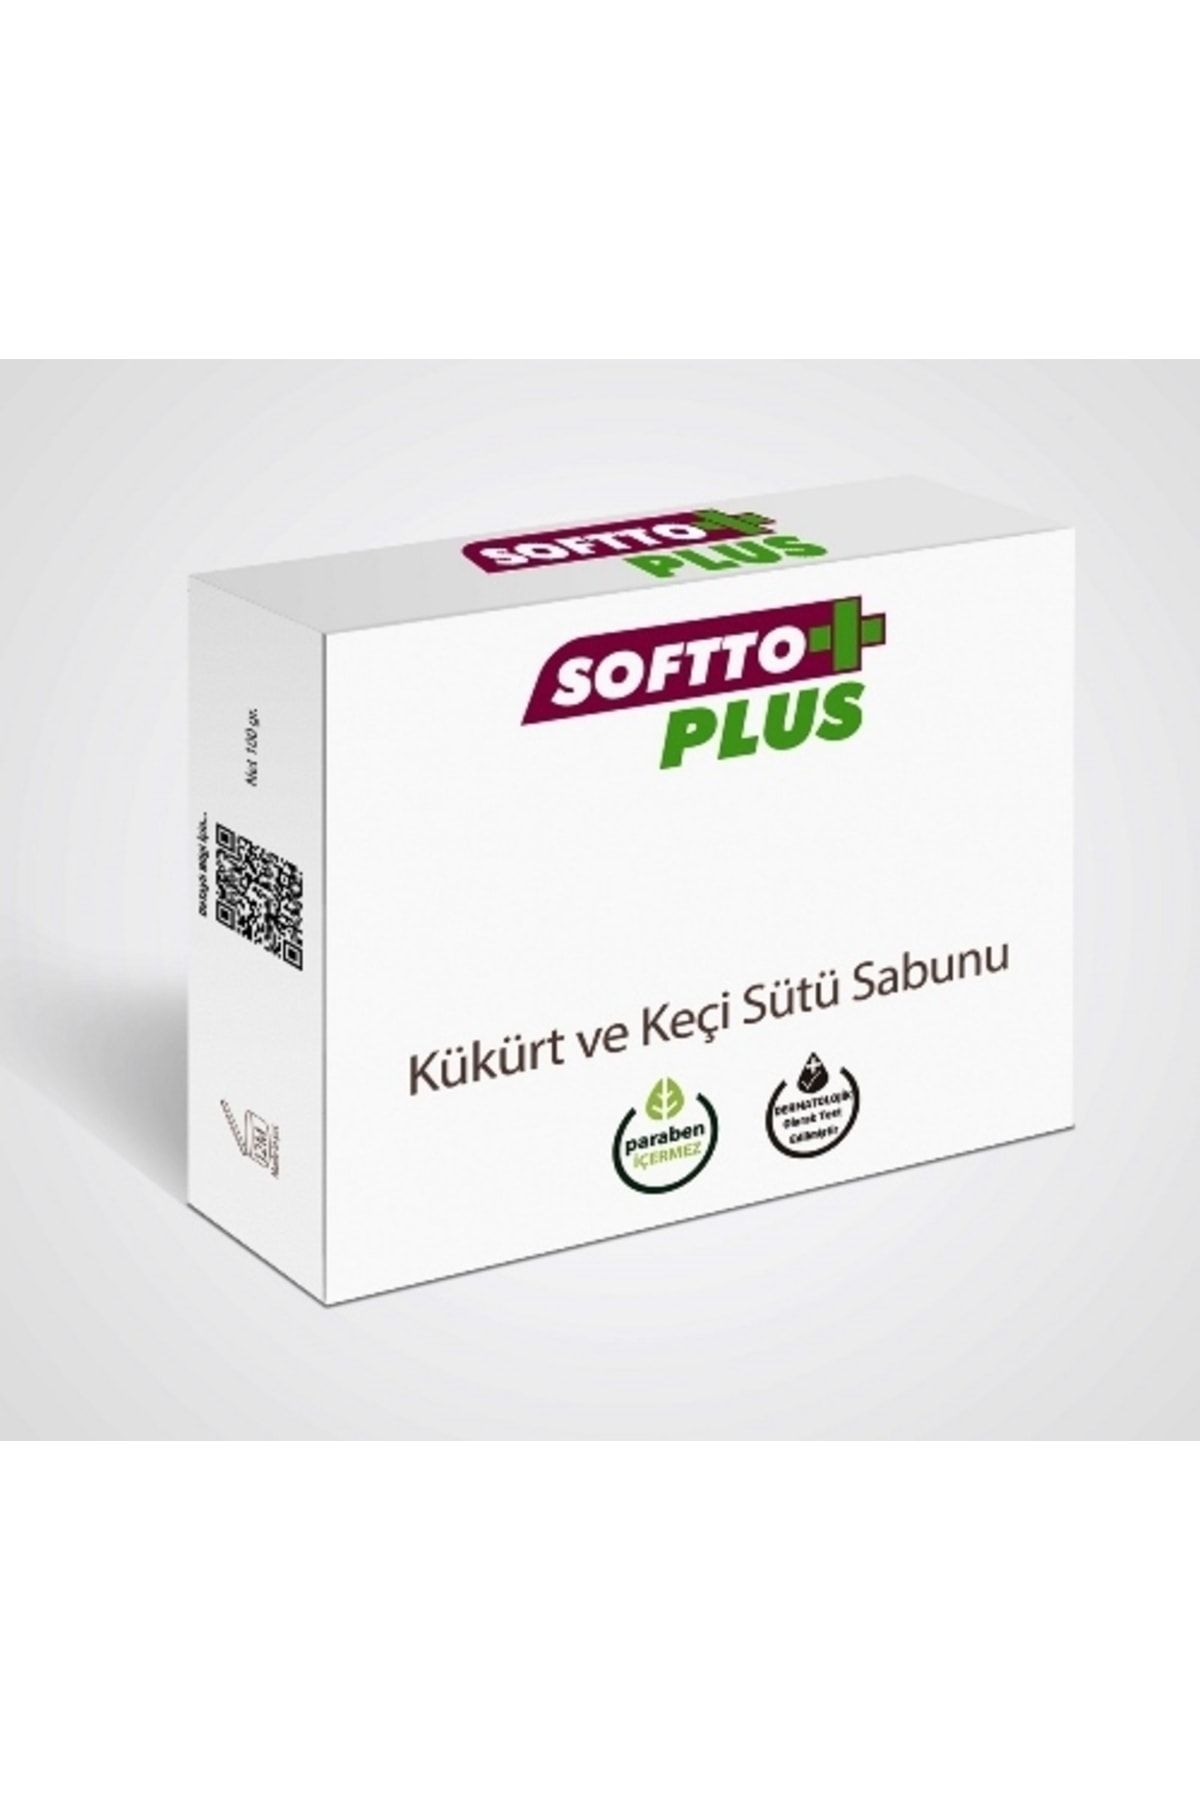 Softto Plus Kükürt Ve Keçi Sütü Sabunu